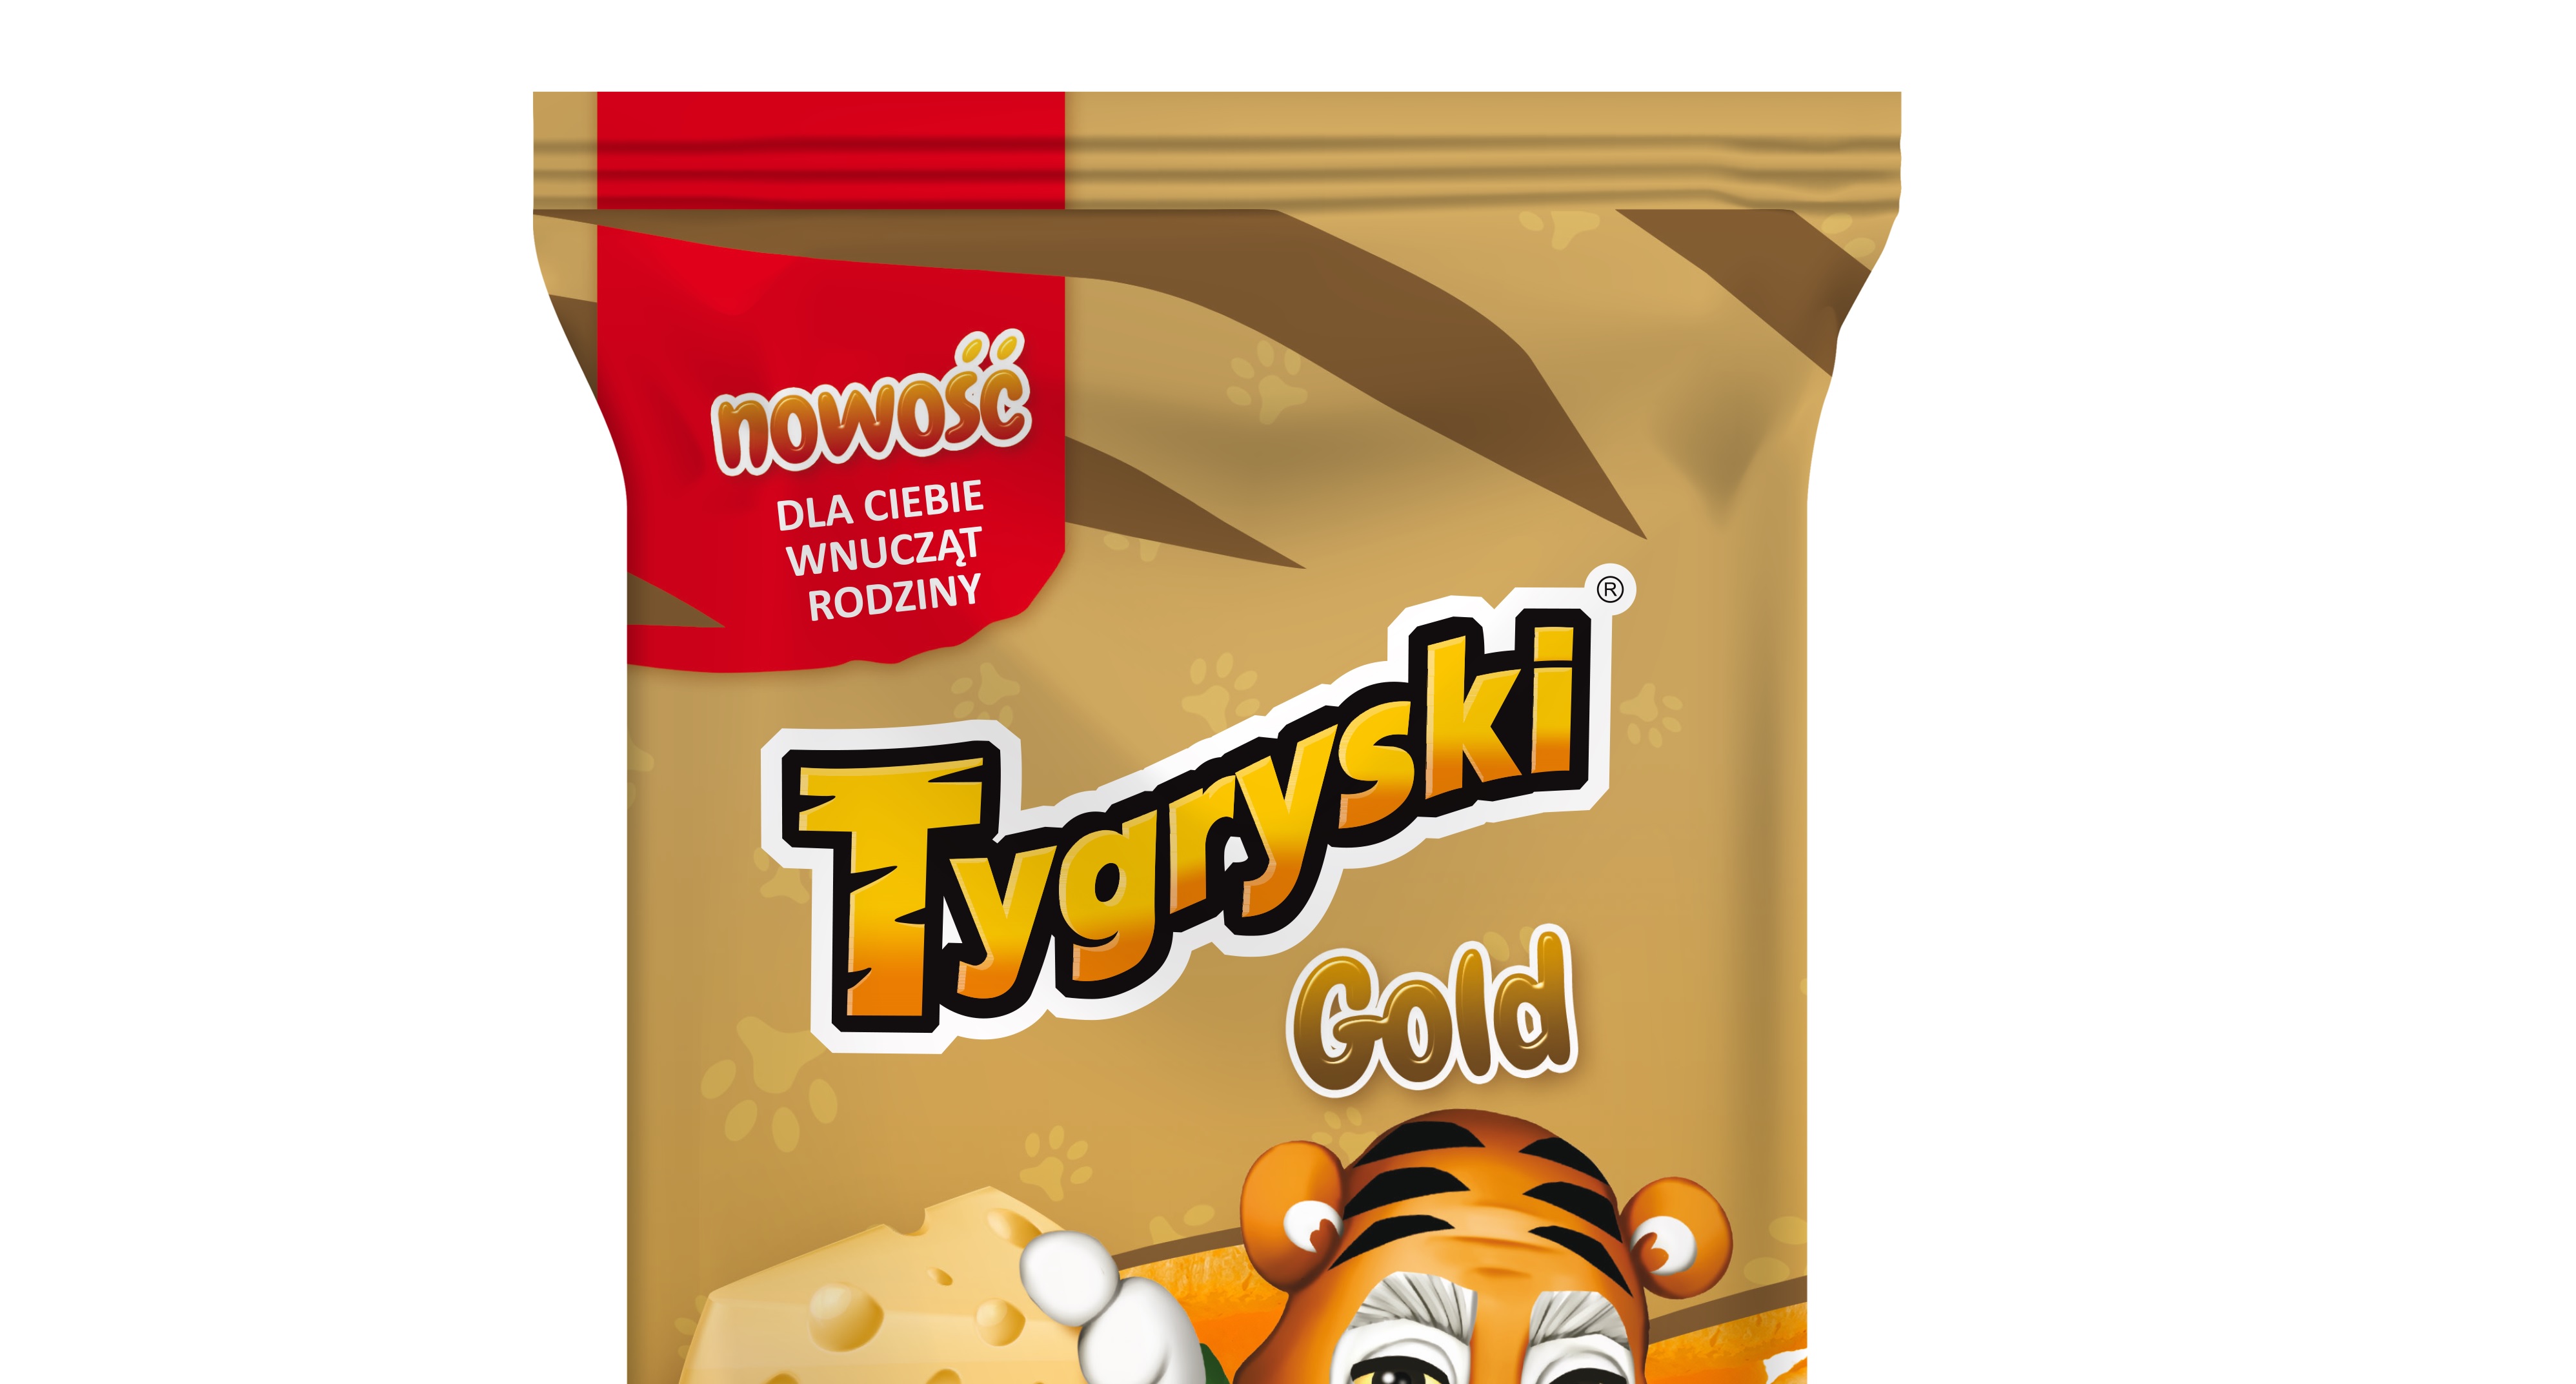 Tygryski GOLD – Nowa kategoria chrupek kukurydzianych z błonnikiem